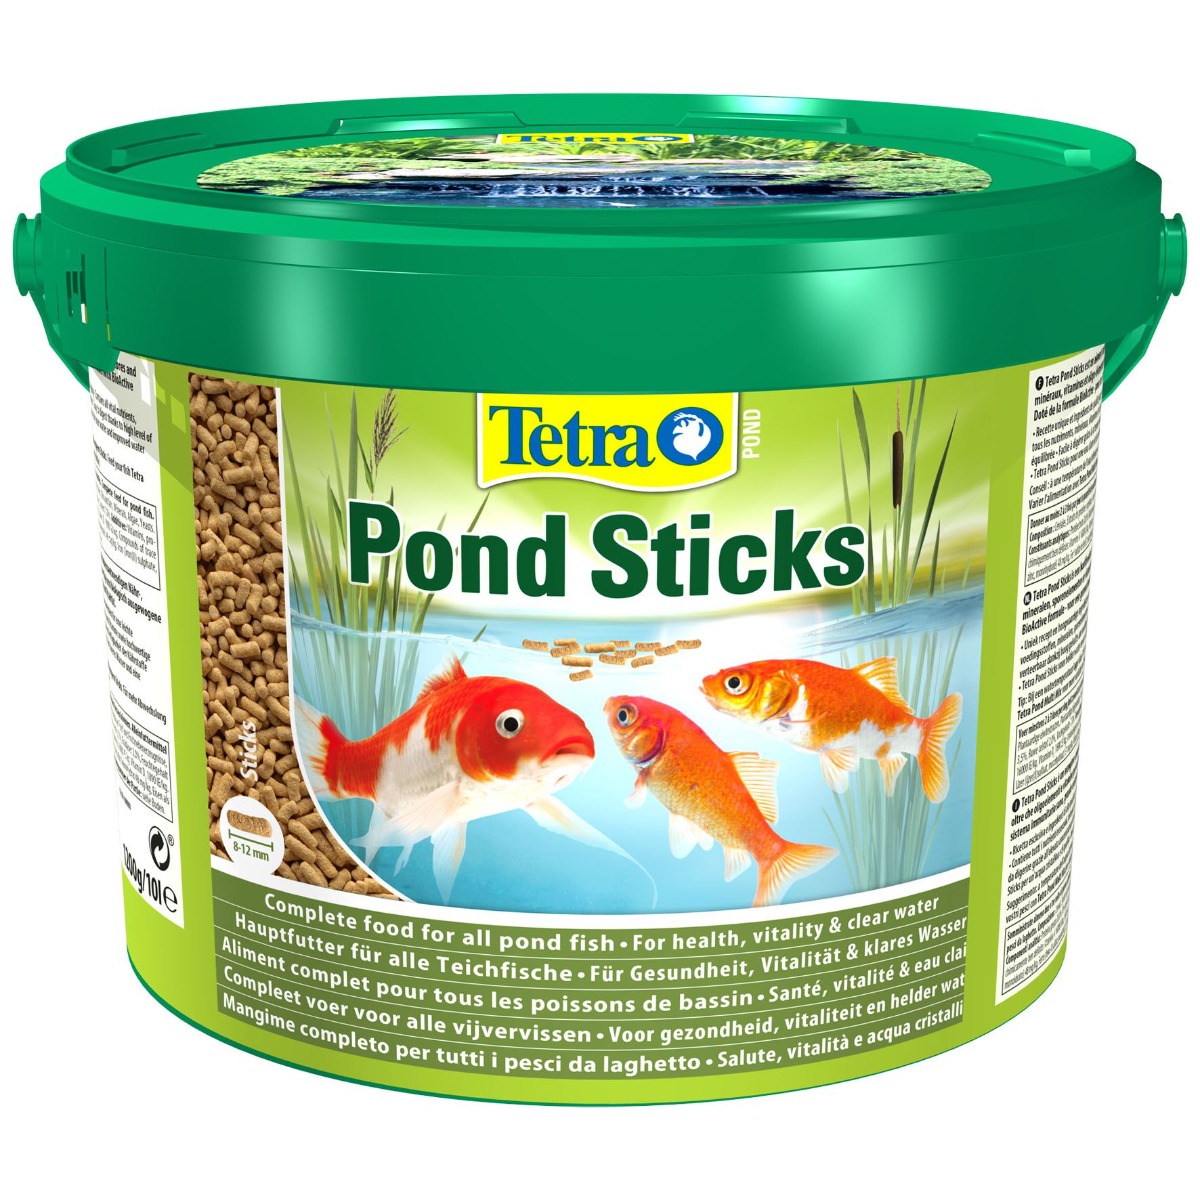 Tetra Pond Flakes – Aliments complets en Flocons pour les poissons